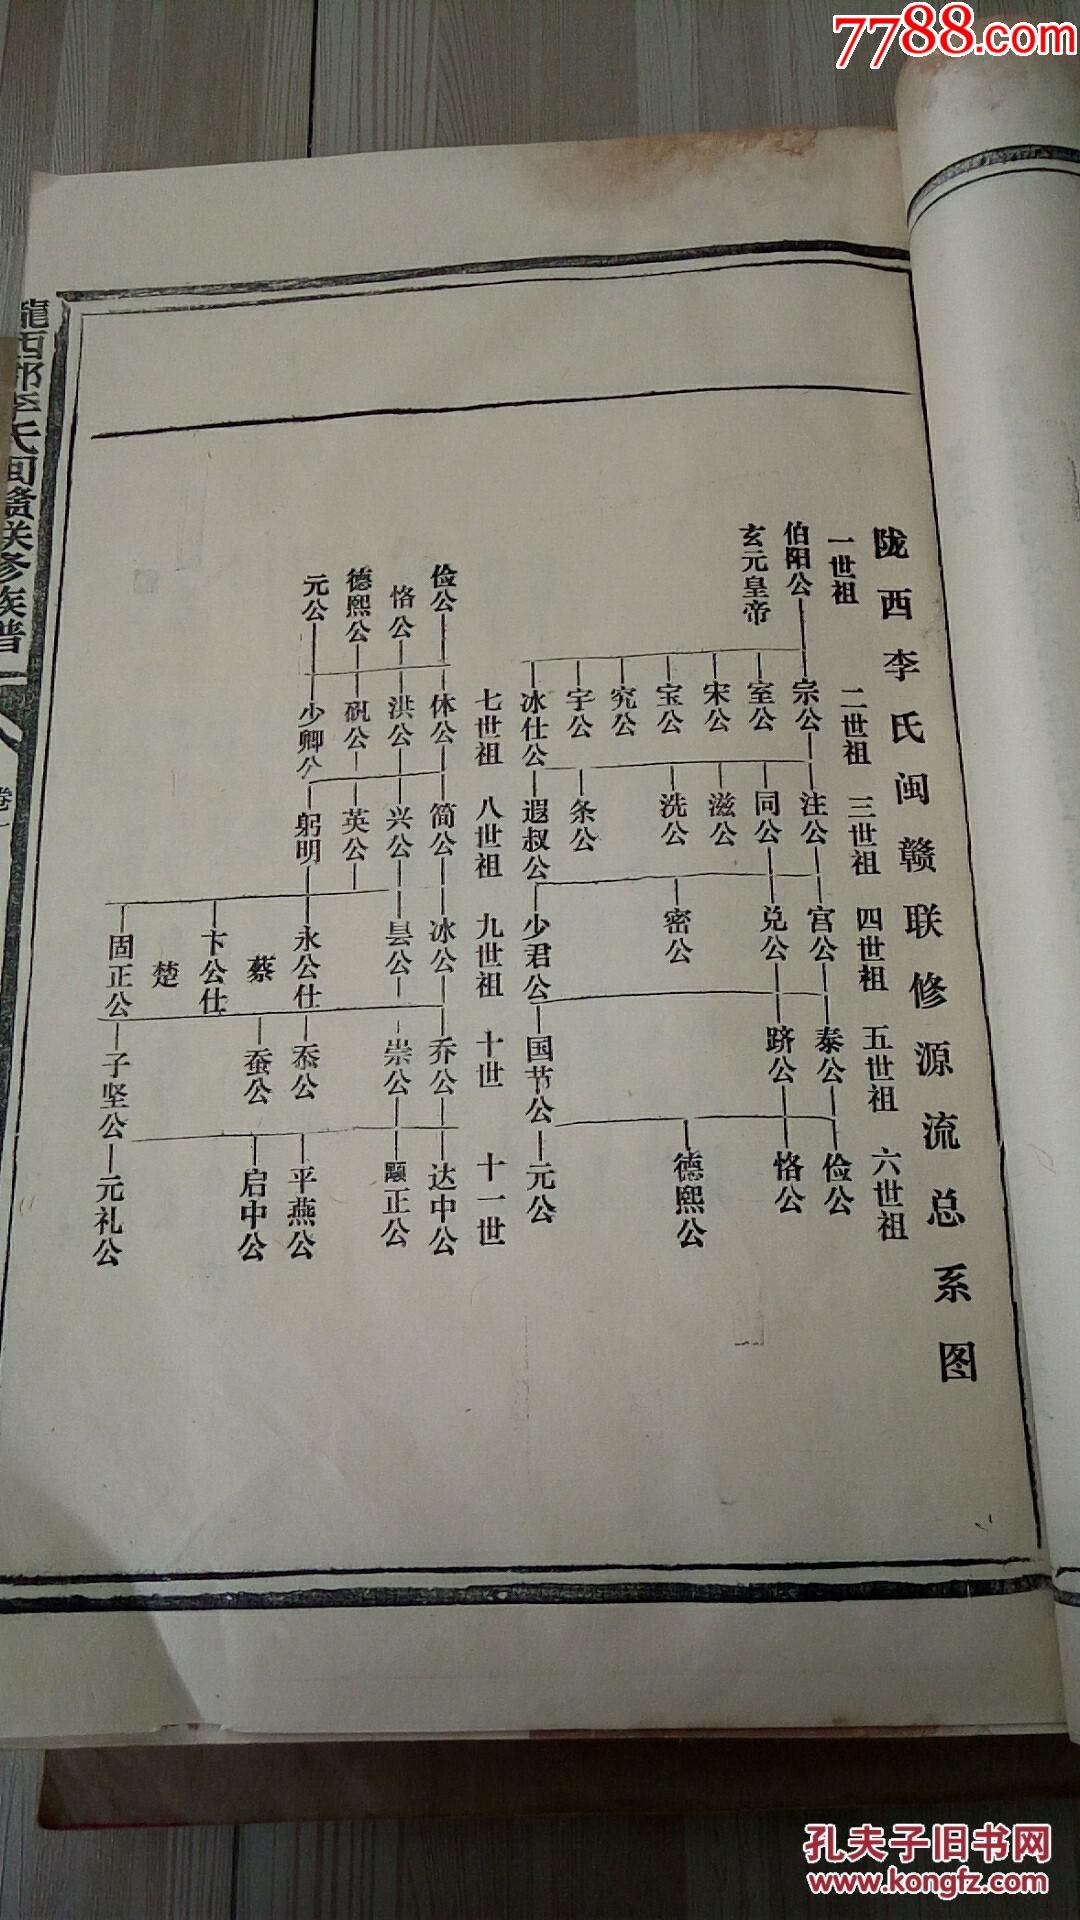 578唐朝李世民皇帝后裔族谱,特大三厚册全,李氏家族从唐朝到1990年